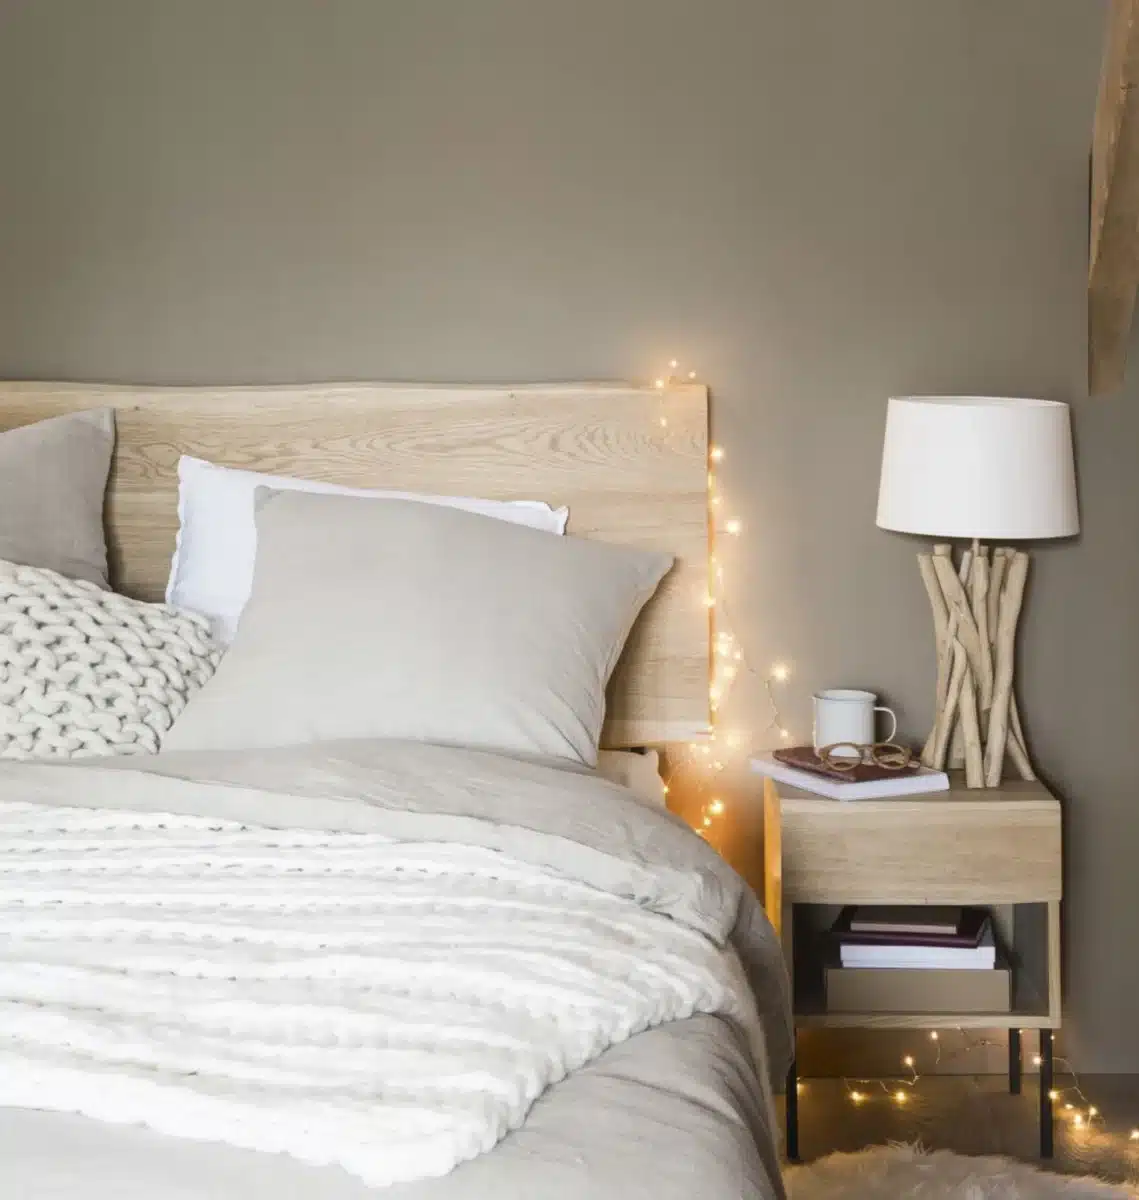 Une tete de lit design en bois clair pour une chambre moderne et reposante